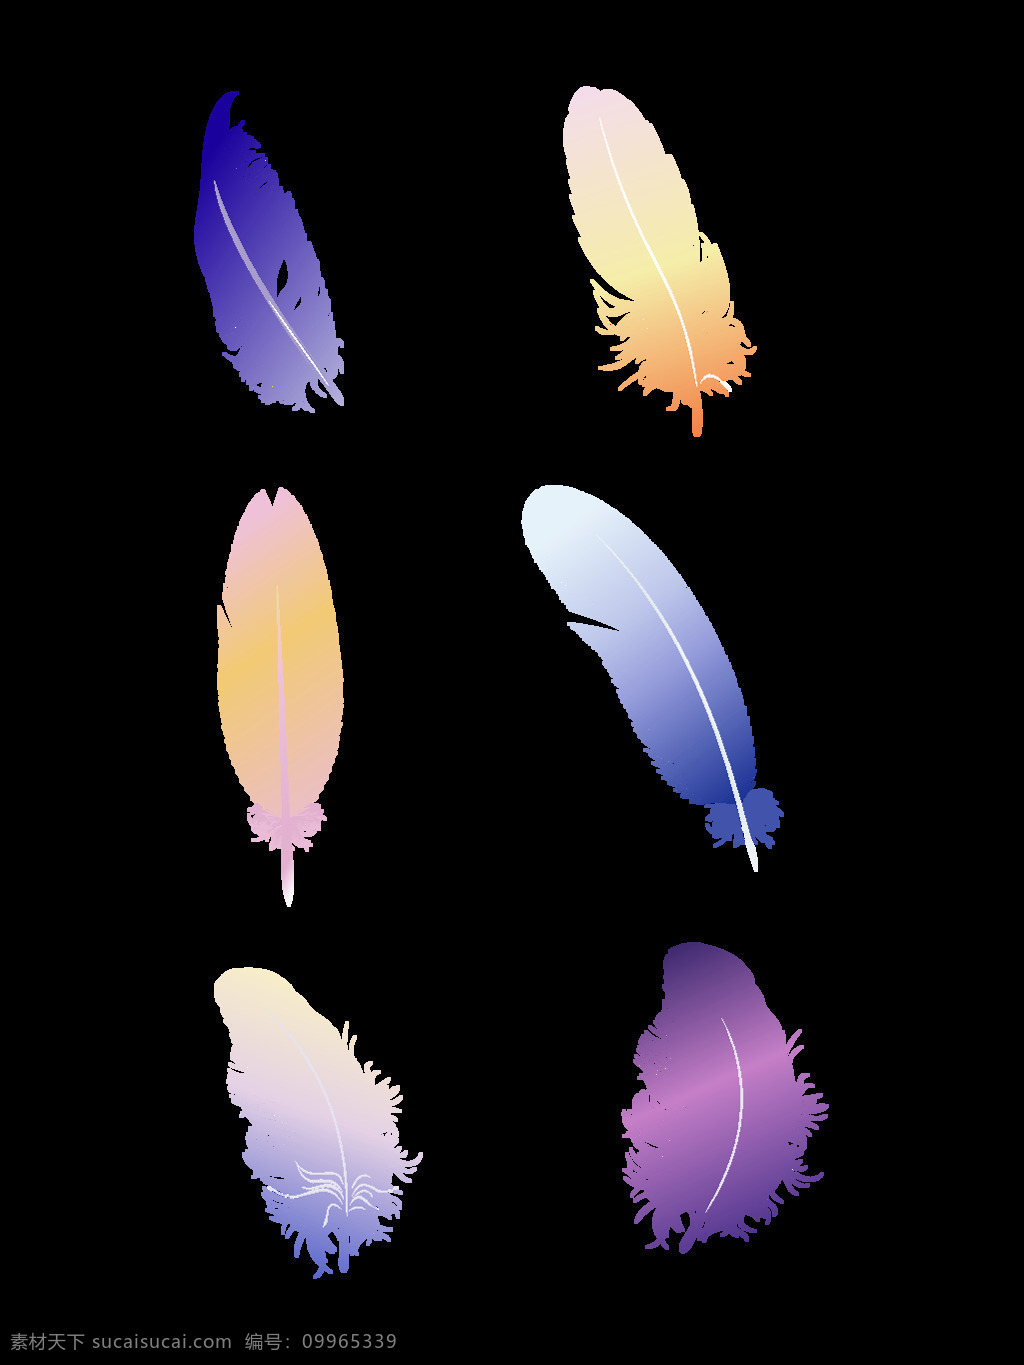 羽毛 彩色 五彩 设计元素 元素 可商用 矢量